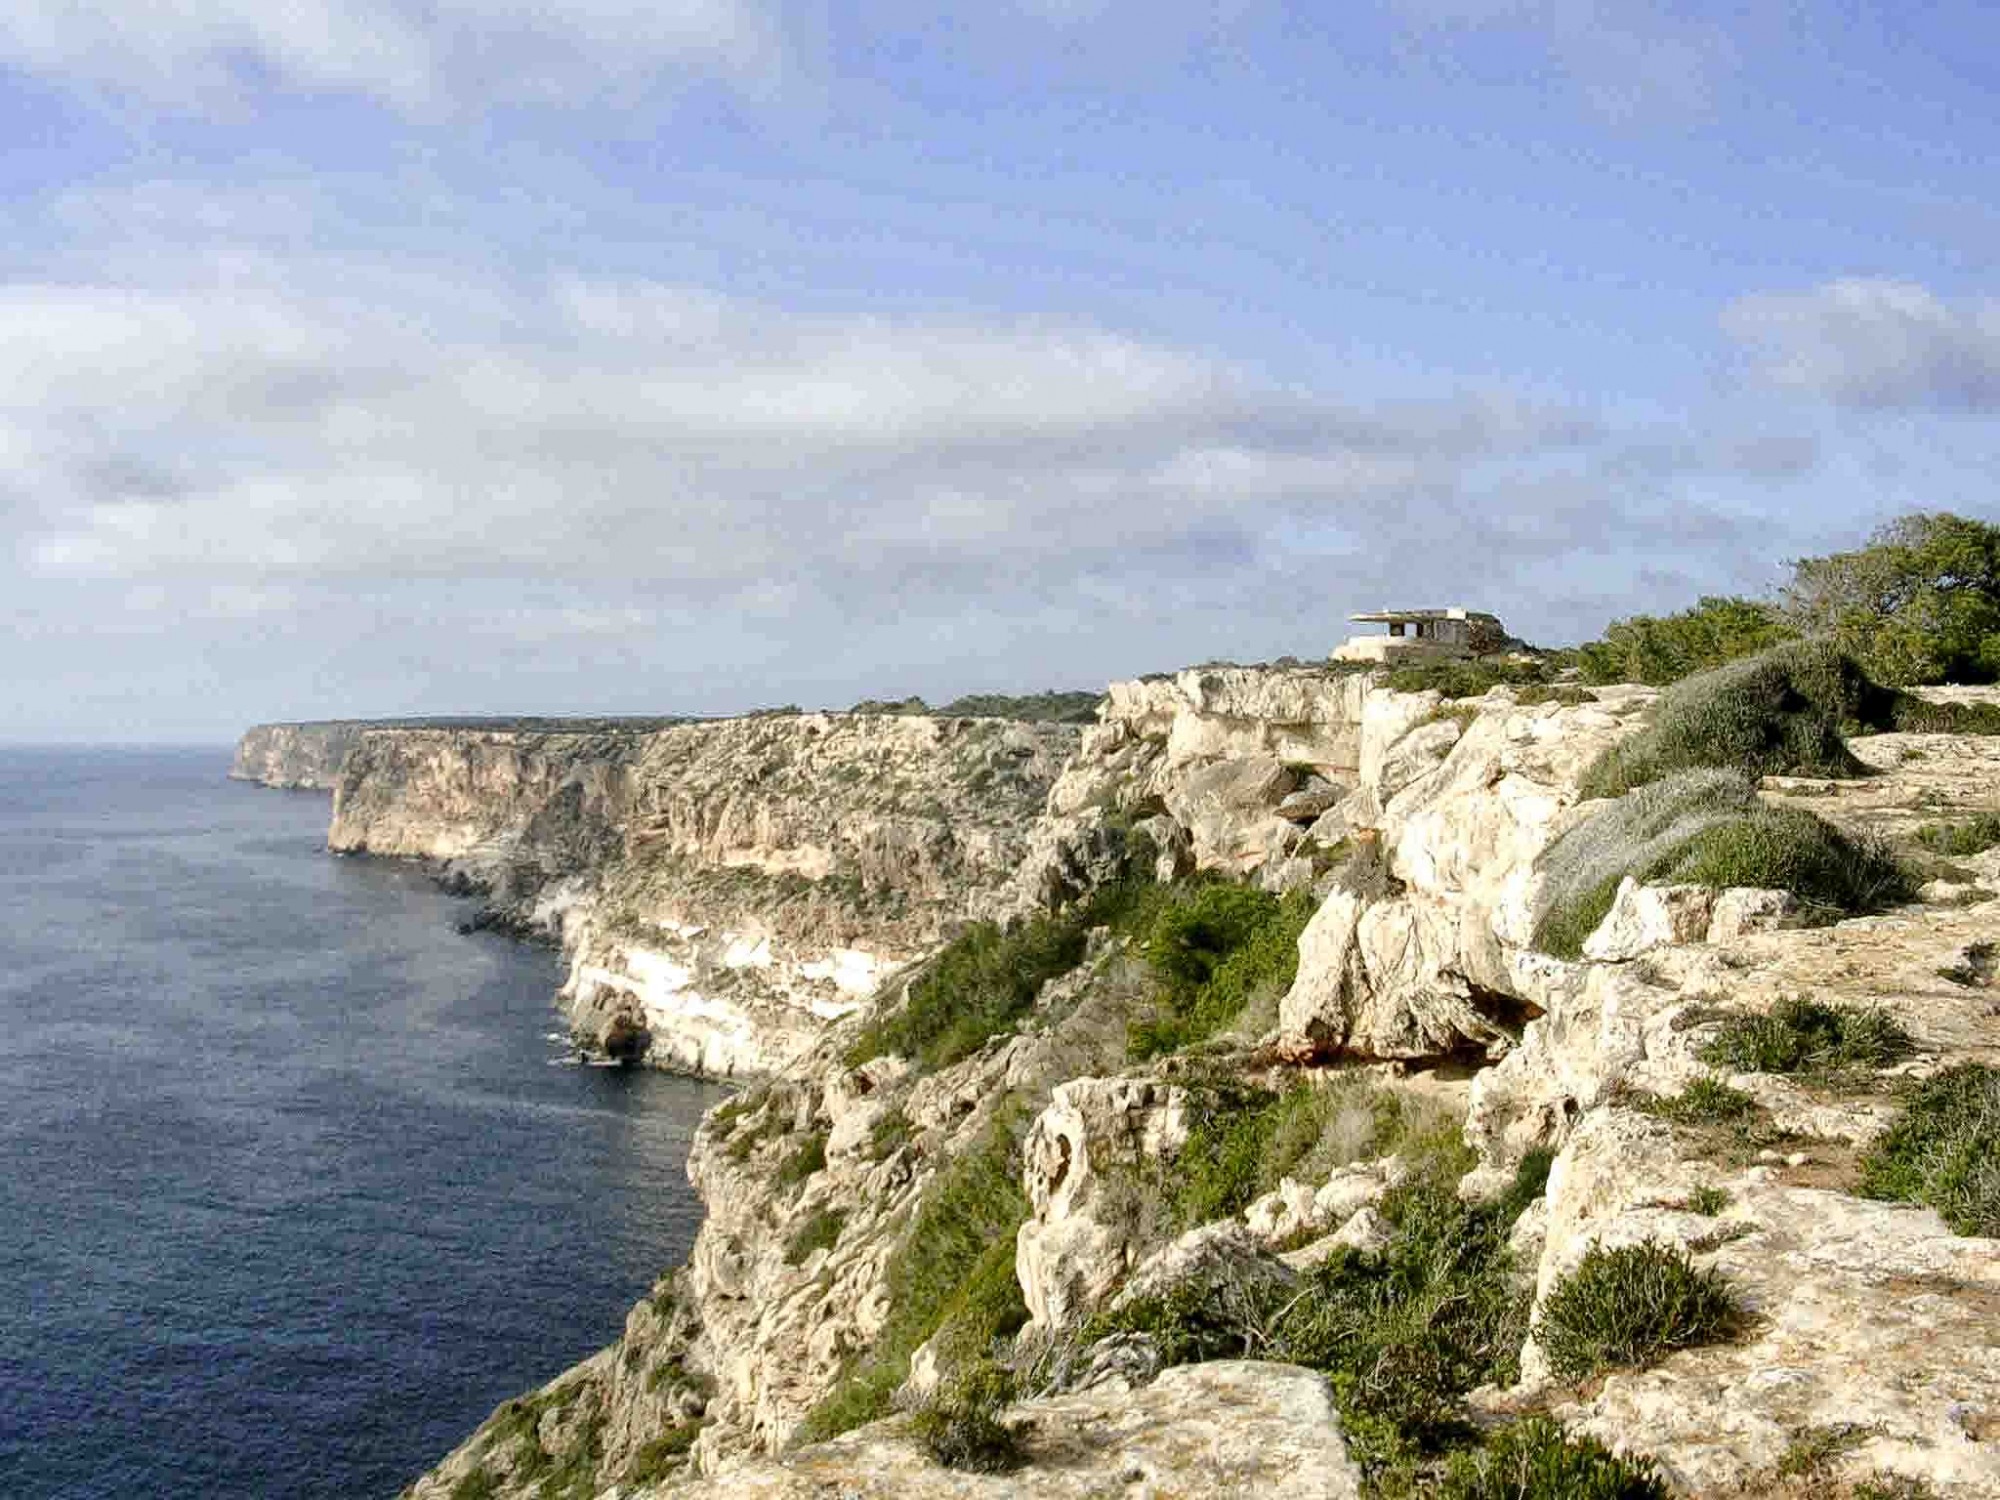 Foto: el mirador y el acantilado - Llucmayor (Illes Balears), España